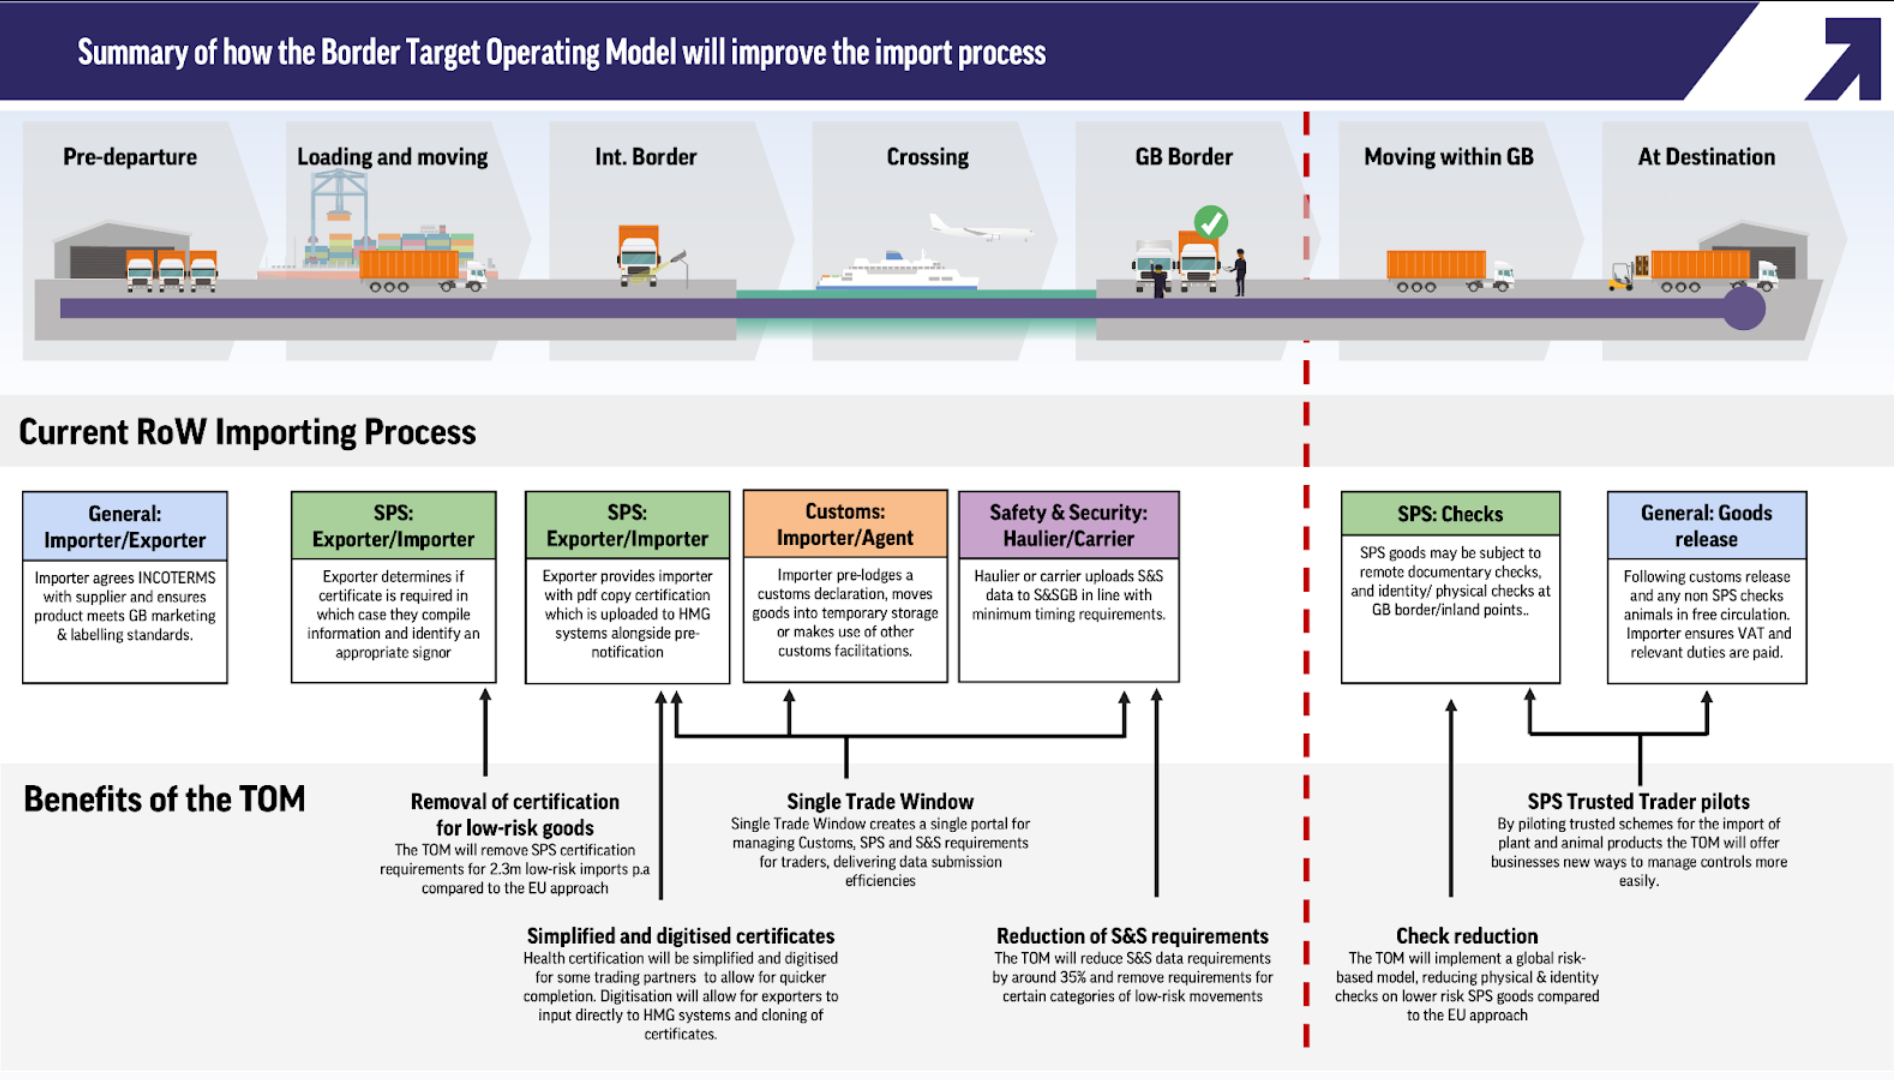 Résumé de la manière dont le Border Target Operating Model améliorera le processus d'importation Source : Site web du gouvernement britannique sur le TOM